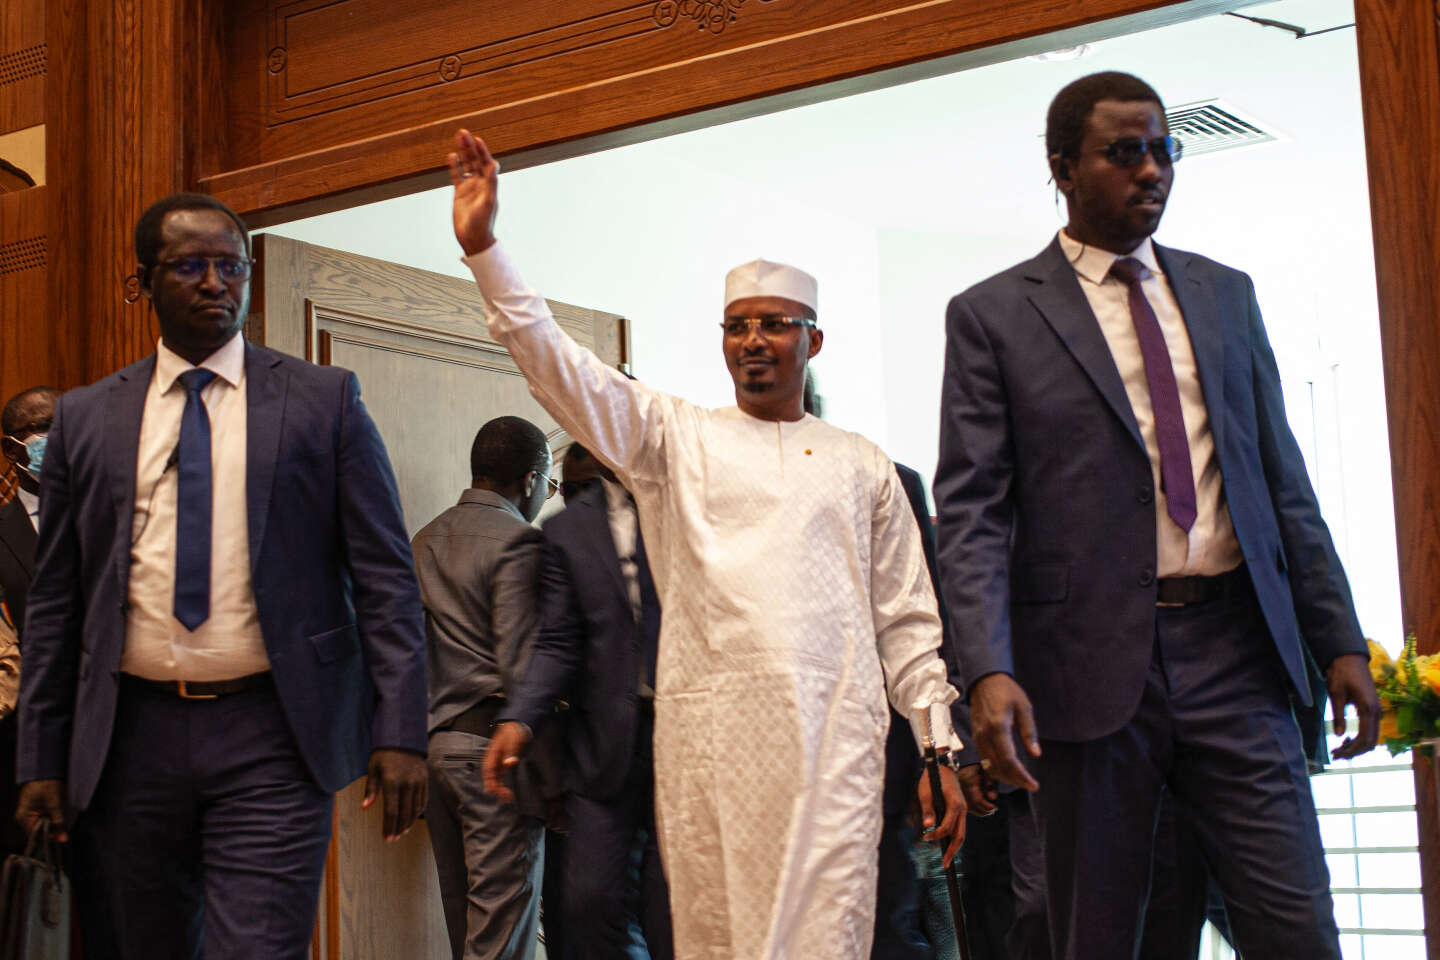 Au Tchad, une Constitution taillée sur mesure pour Mahamat Idriss Déby